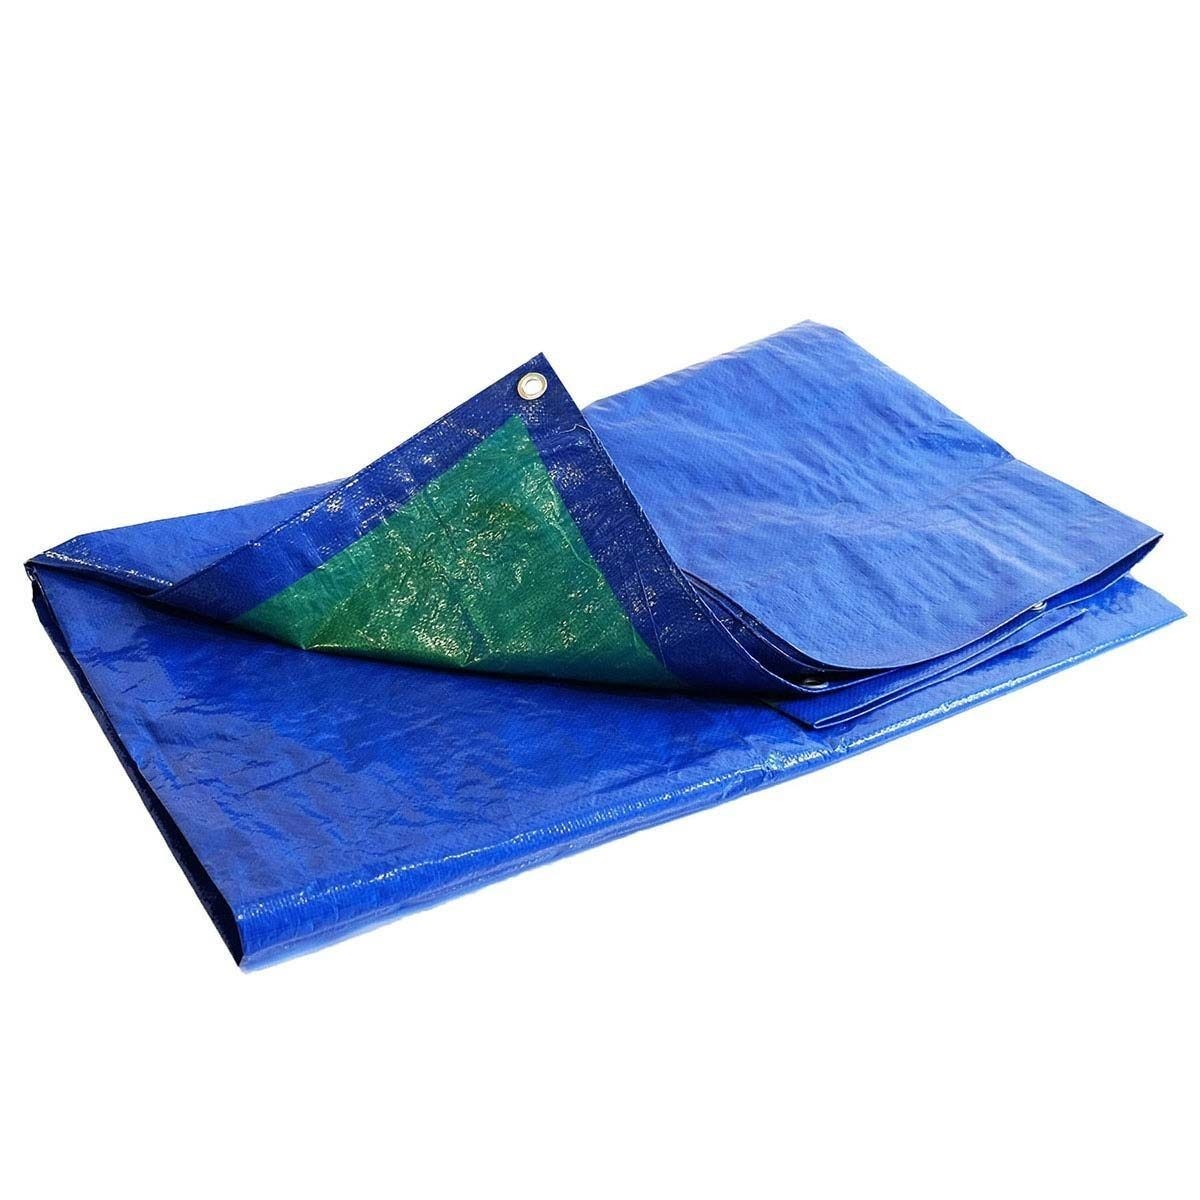 Bâche de Protection 2x3 m - TECPLAST 150MU - Bleue et Verte - Haute Qualité - Bâche d'extérieur imperméable avec oeillets 0